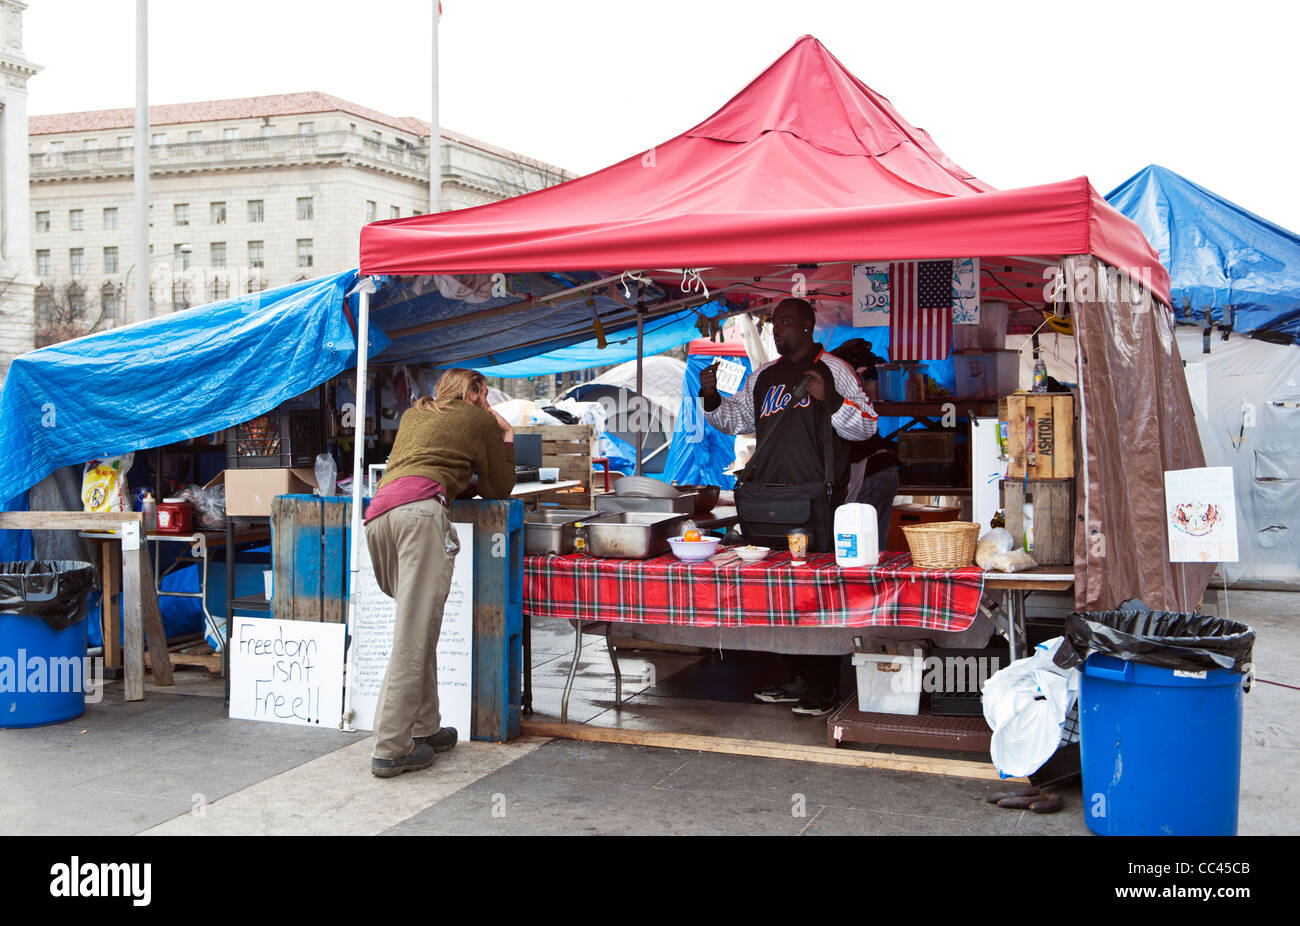 La nourriture tente à occuper DC. Un homme a mis en place une tente de préparer et servir de la nourriture à l'occupant Banque D'Images